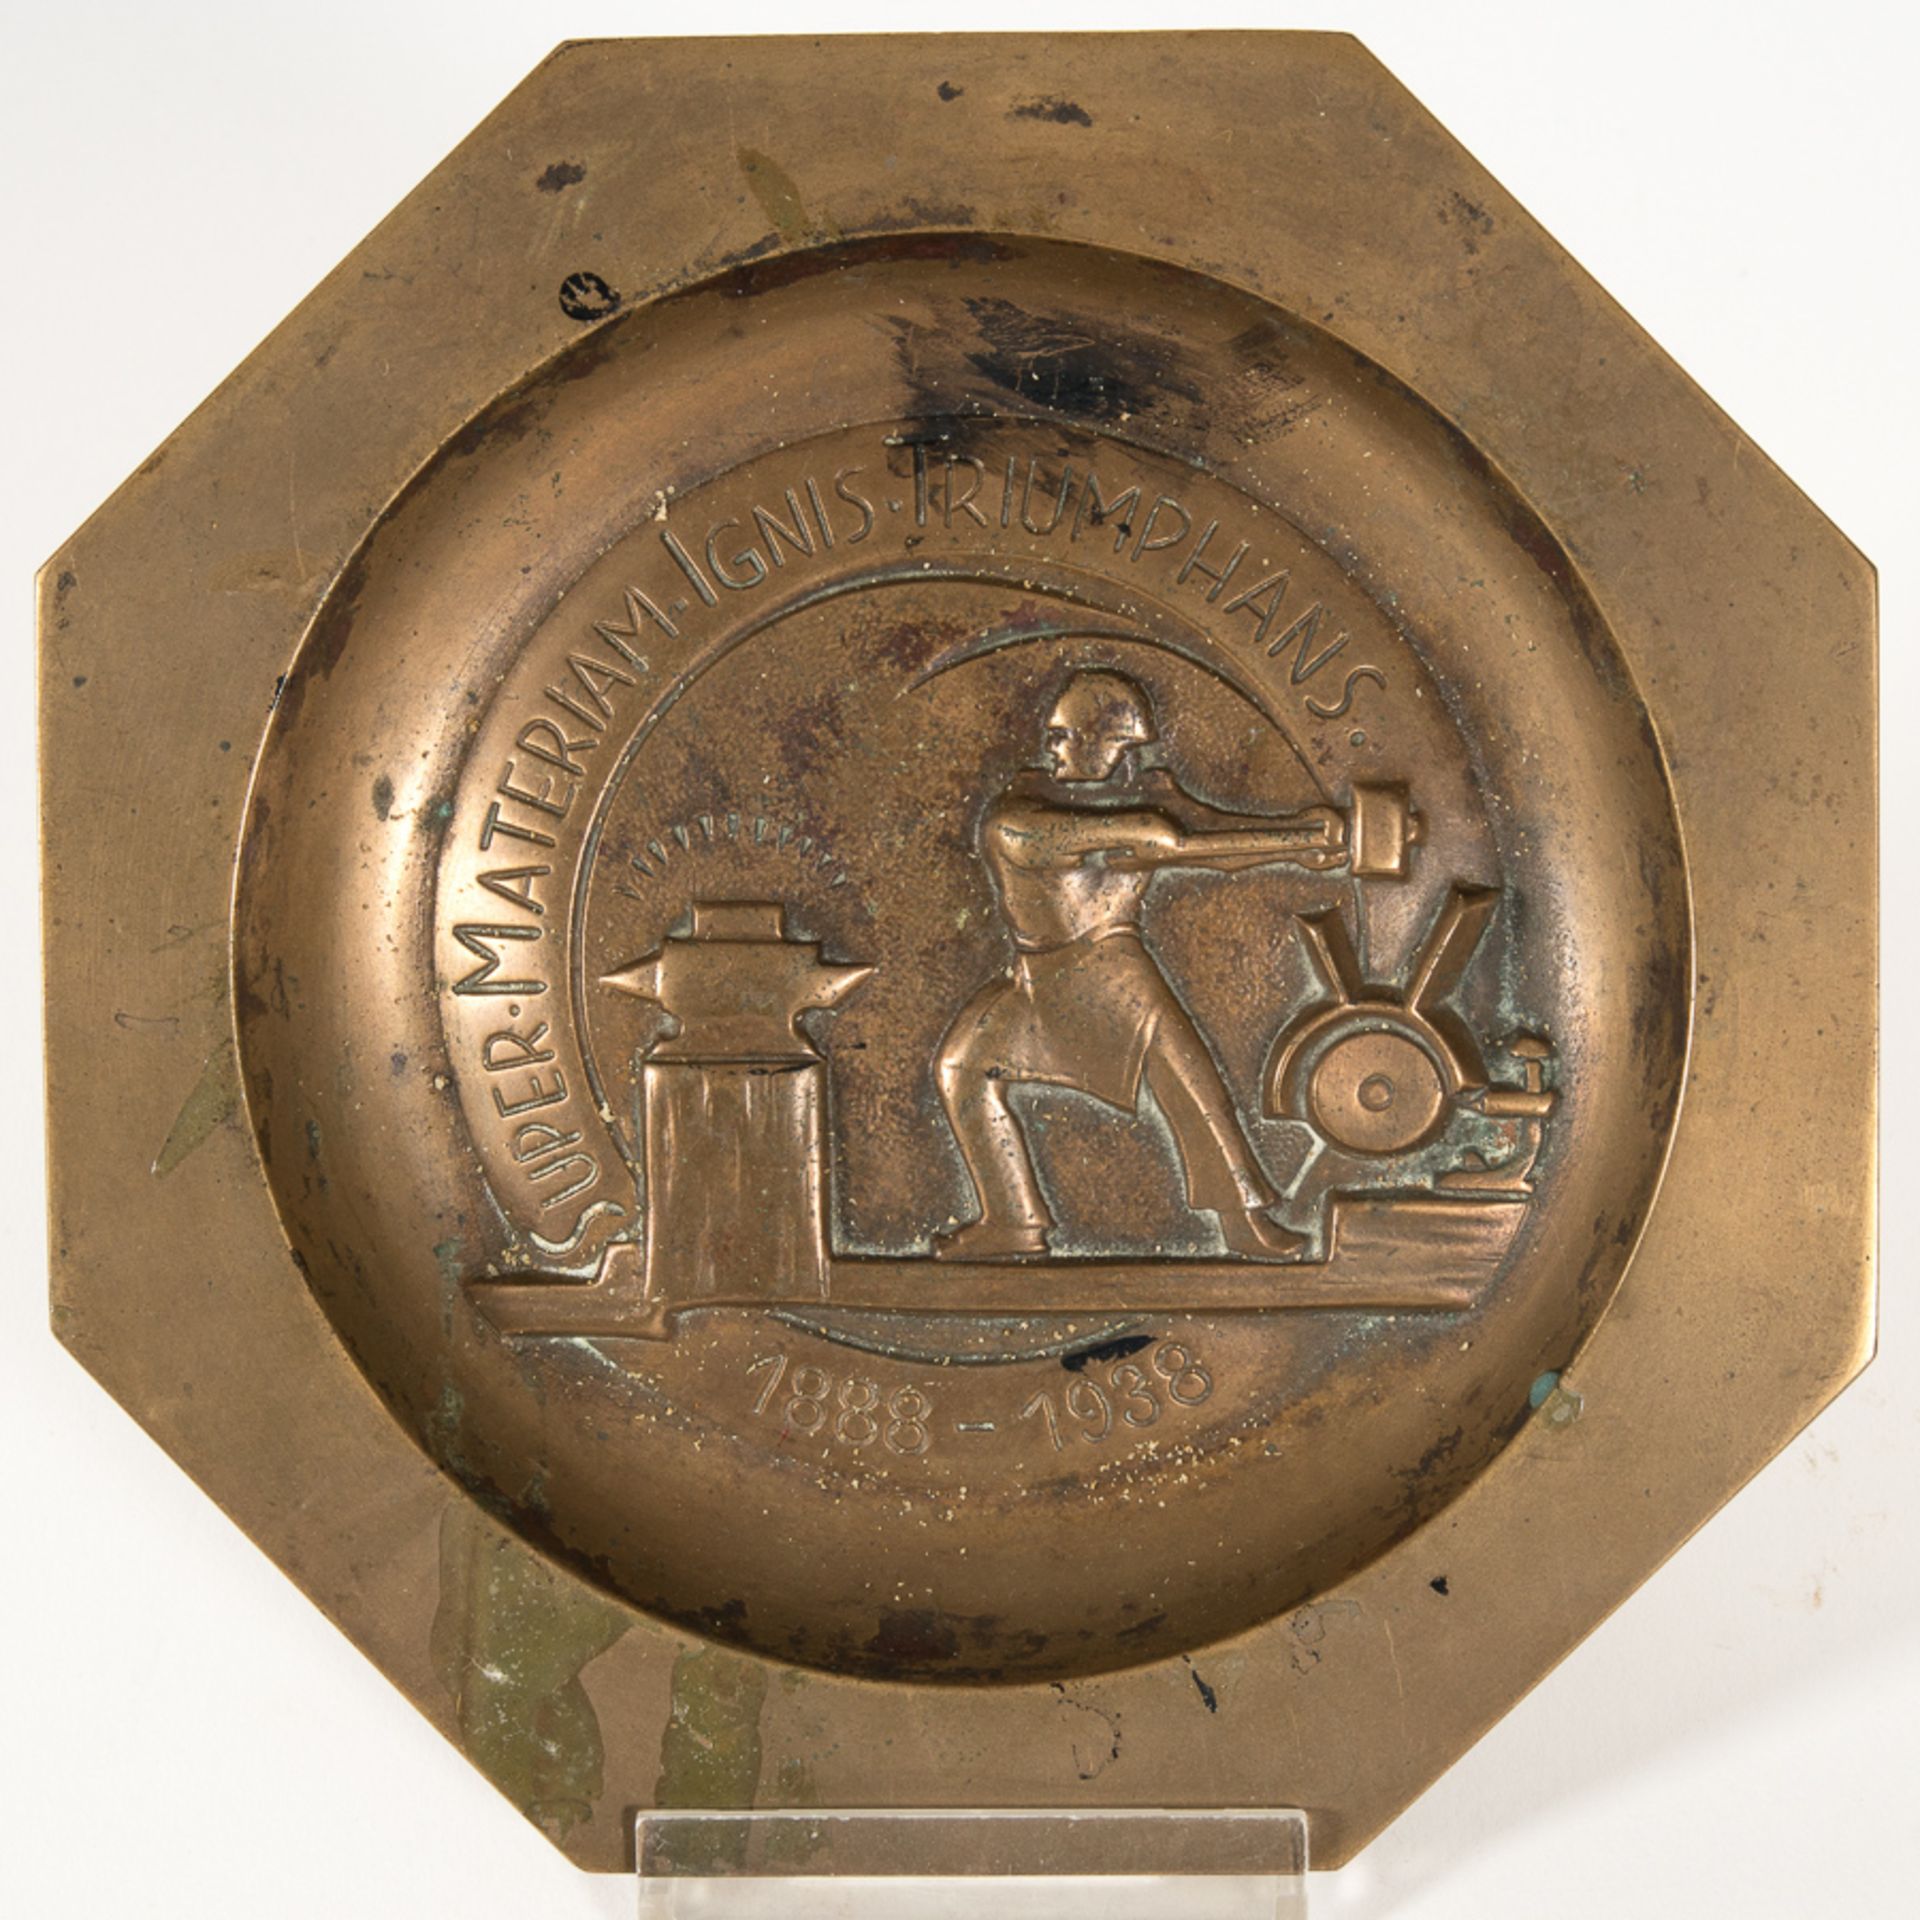 "SUPER MATERIAM IGNIS TRIUMPHANS" 1888-1938. 6eckige Bronzeschale, Durchmesser 17,5 cm.